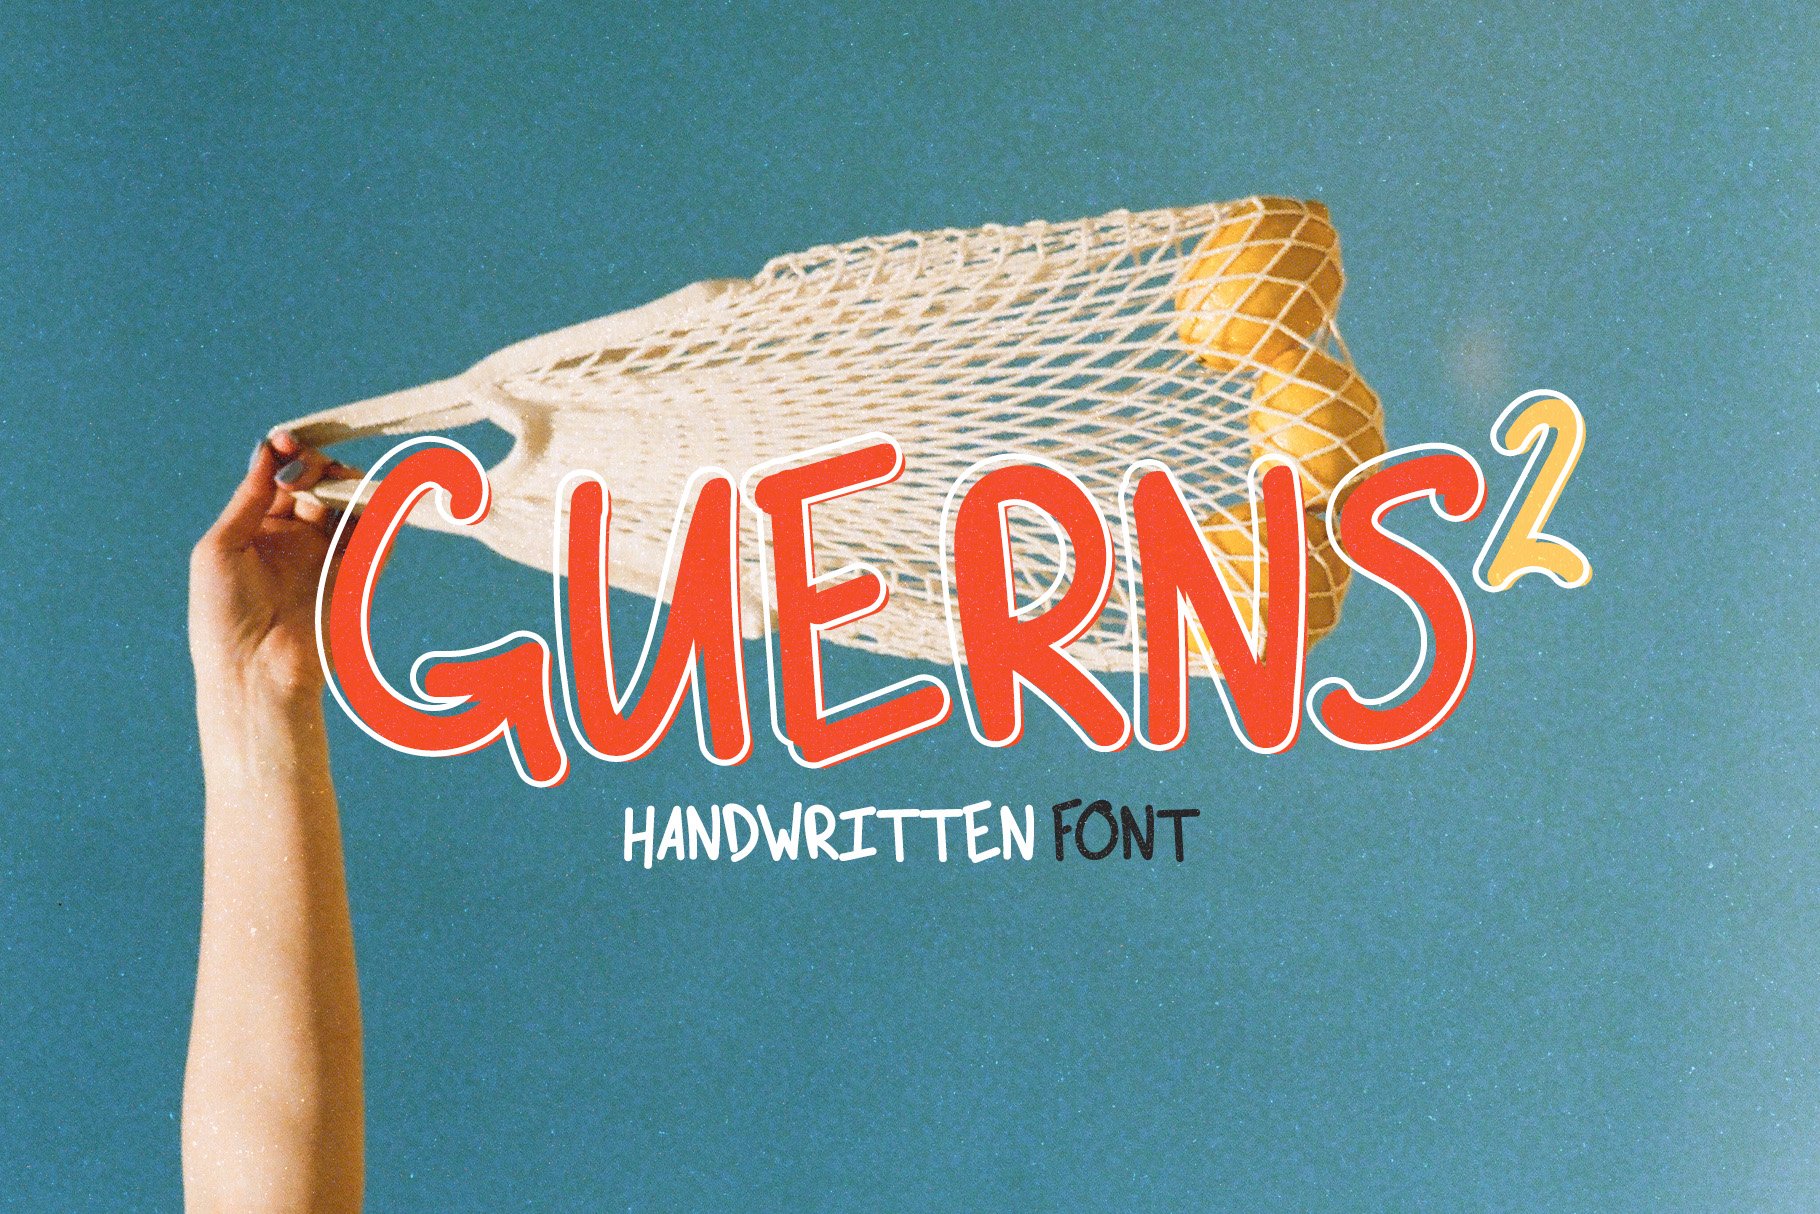 Guerns 2 | Handwritten Font cover image.